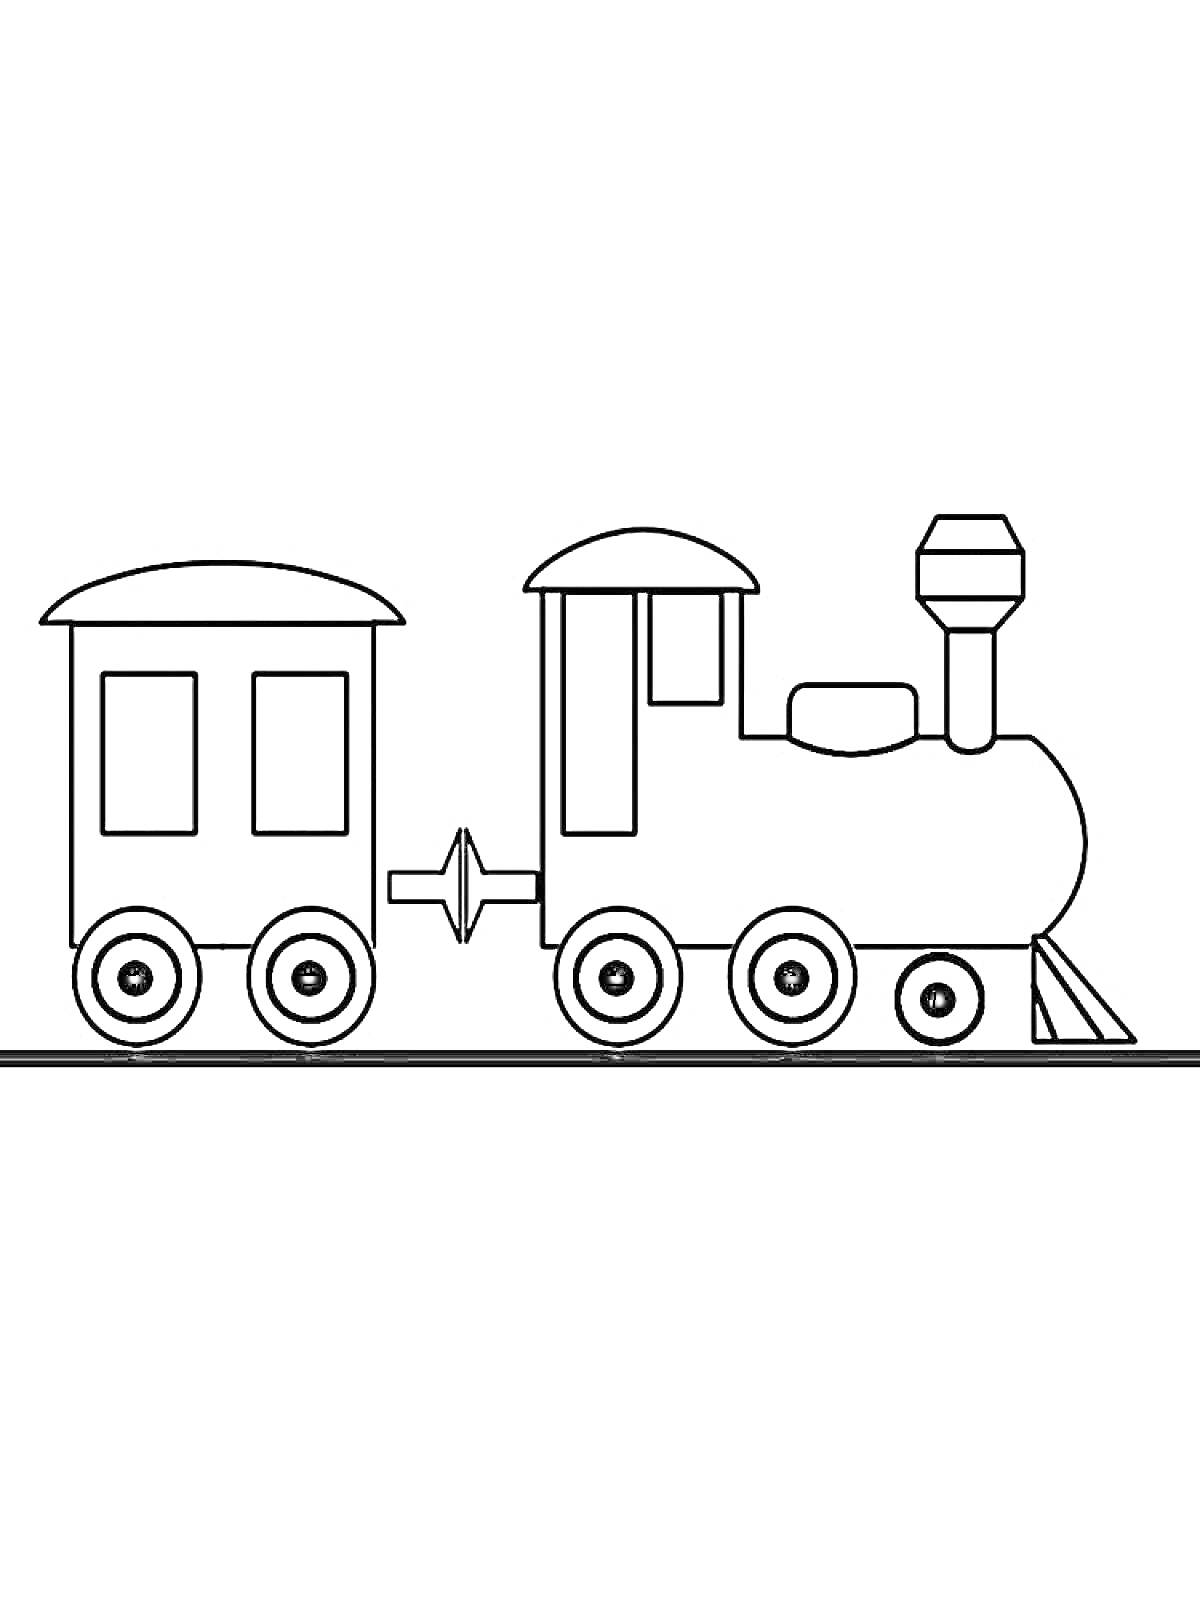 Раскраска Паровозик с вагоном на рельсах